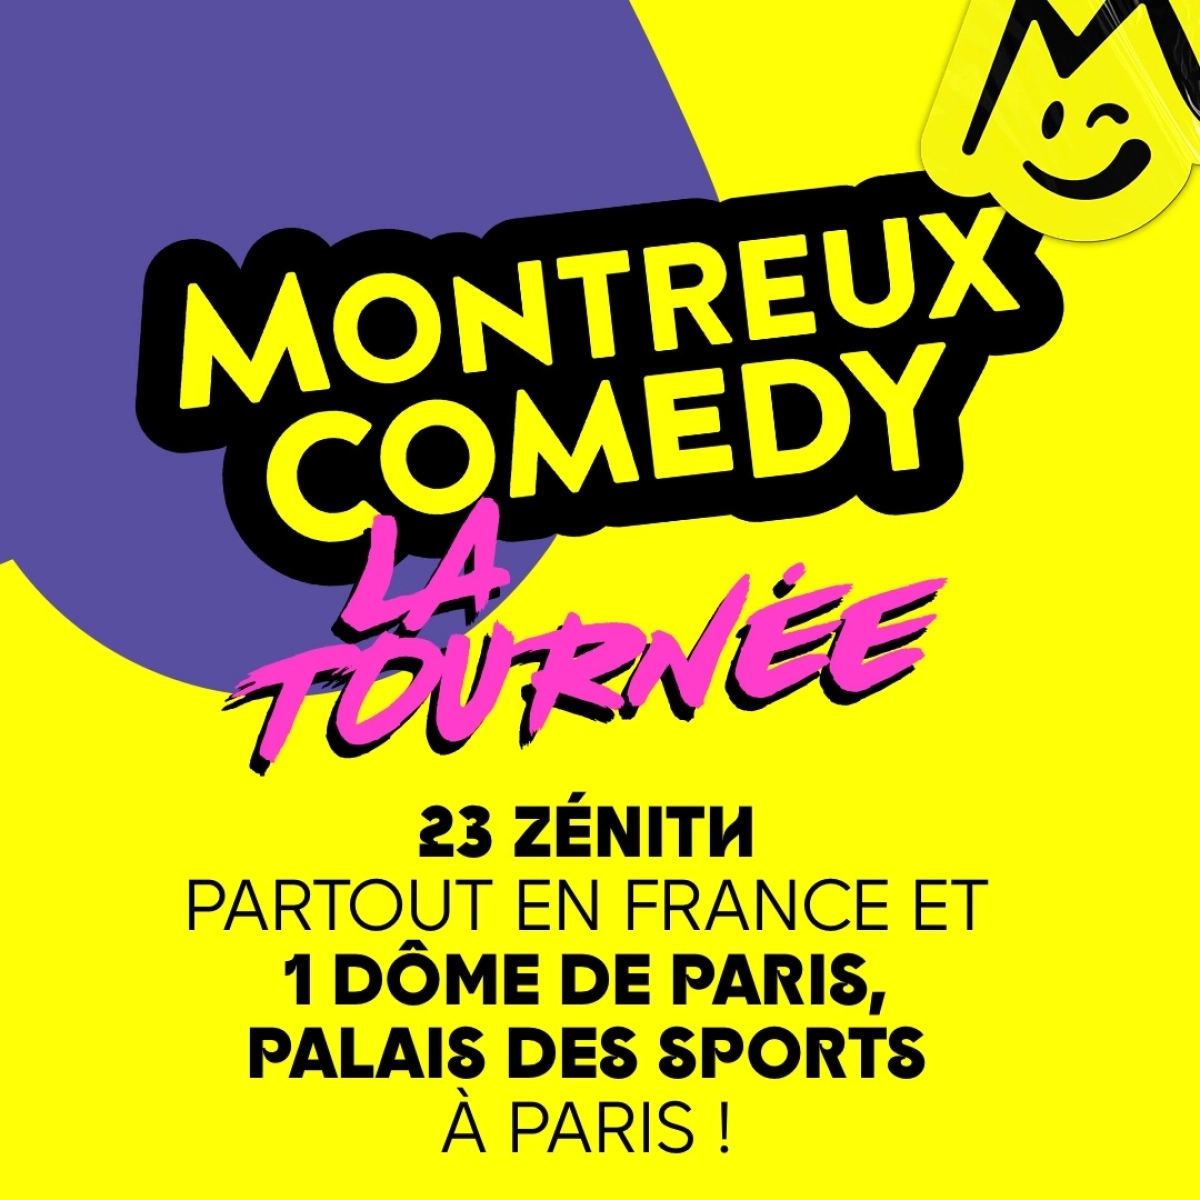 Montreux Comedy - La Tournée at Elispace Tickets